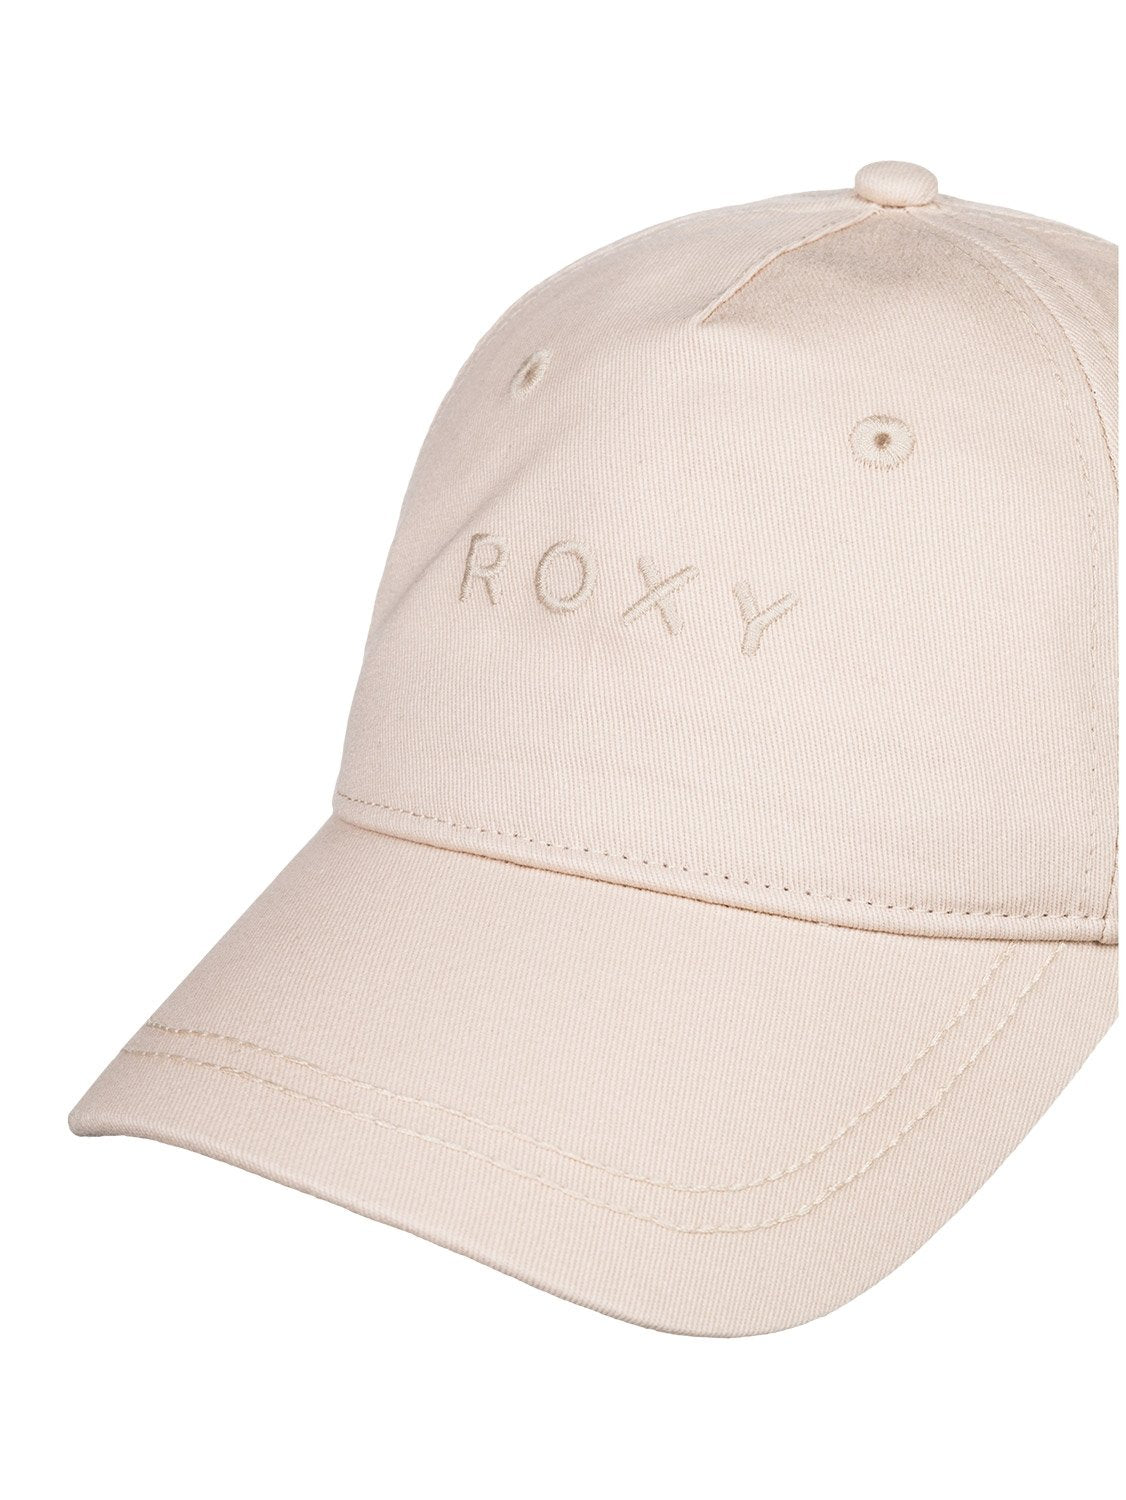 Roxy Ladies Dear Believer Cap